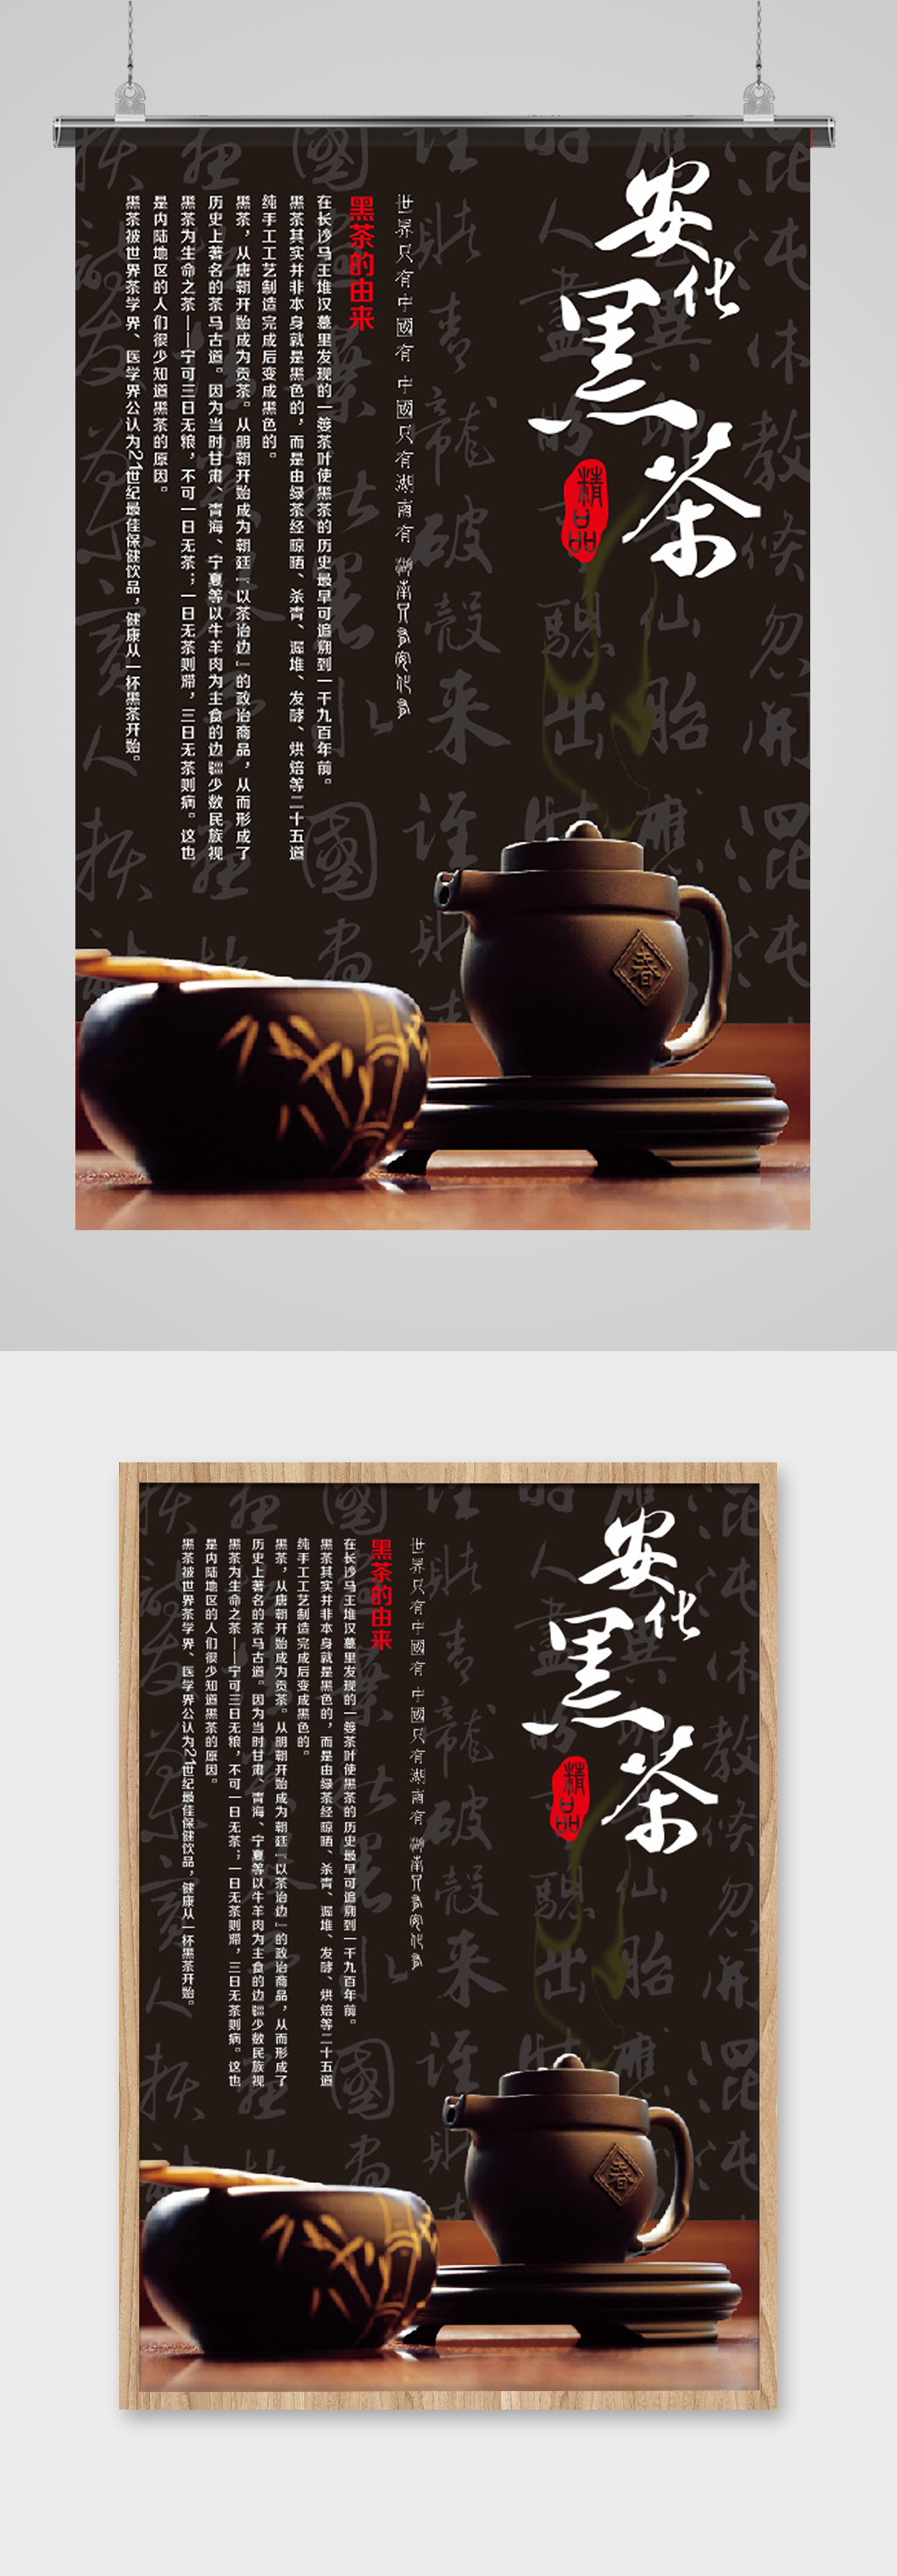 安化黑茶广告牌设计图片